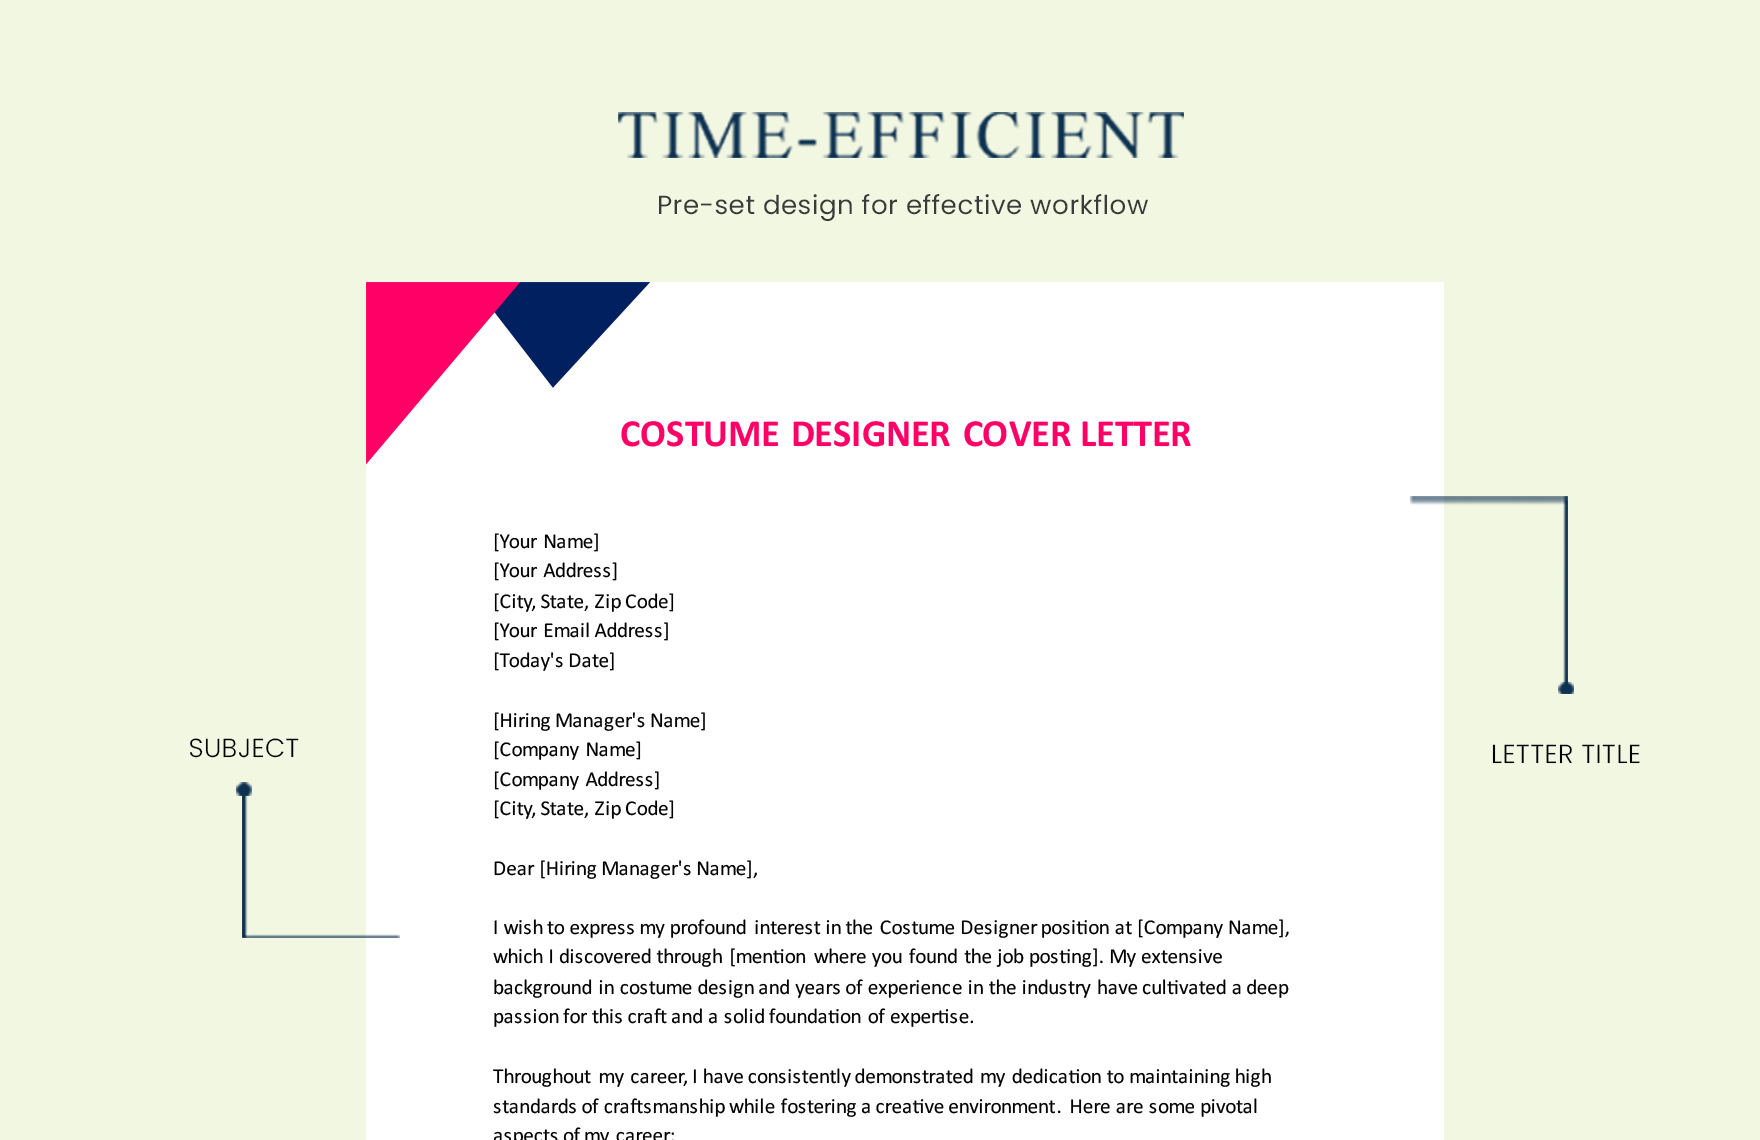 Costume Designer Cover Letter